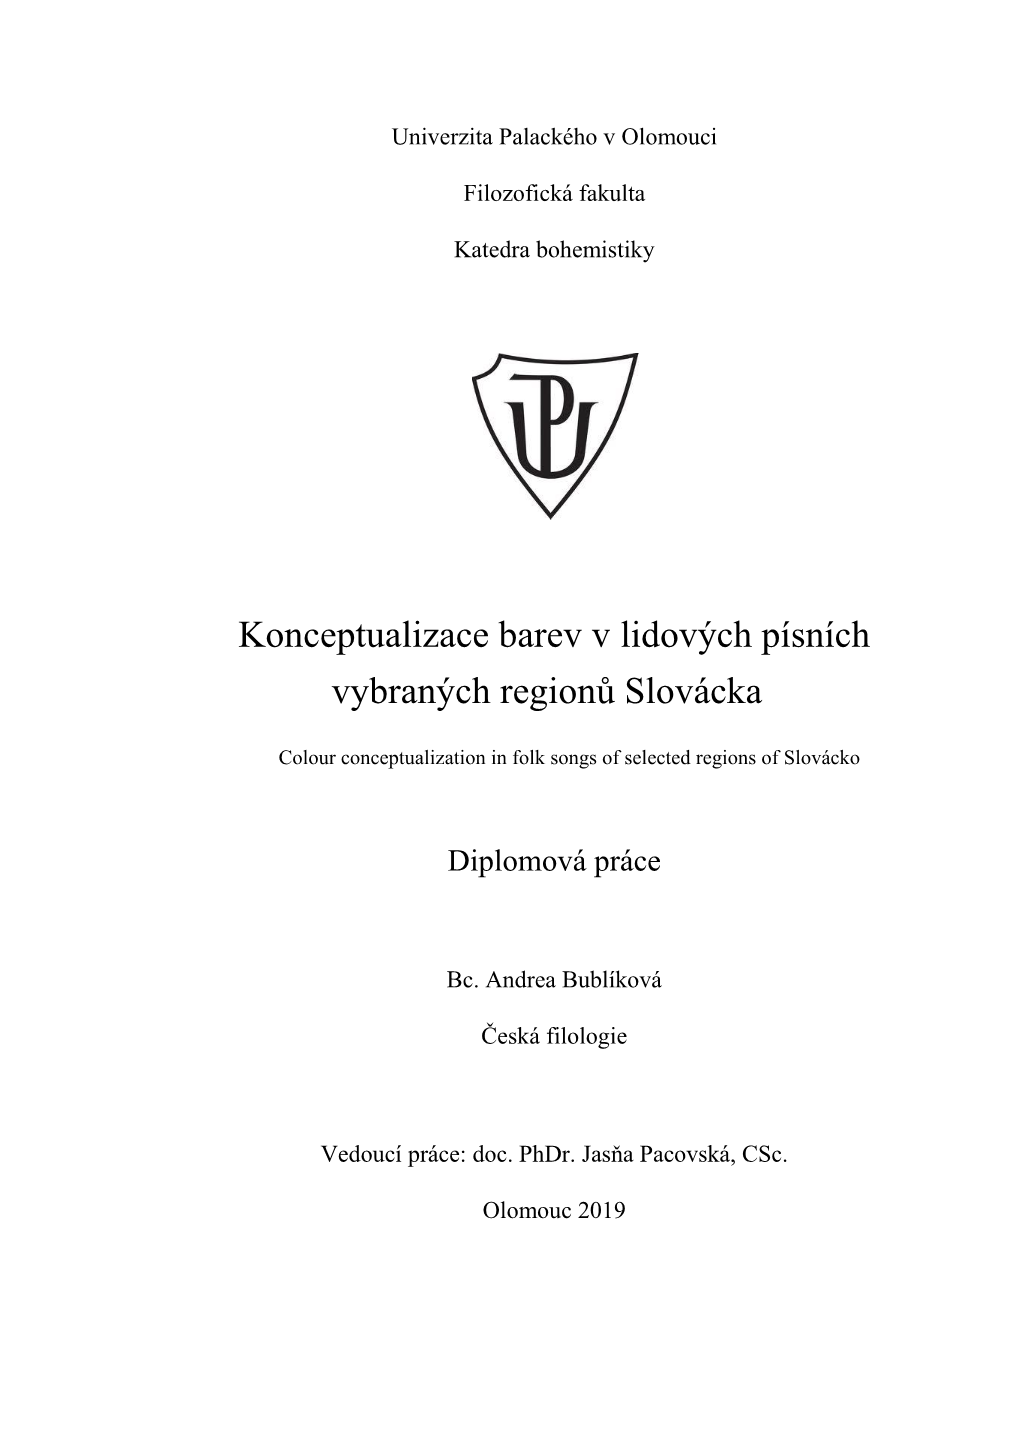 Konceptualizace Barev V Lidových Písních Vybraných Regionů Slovácka